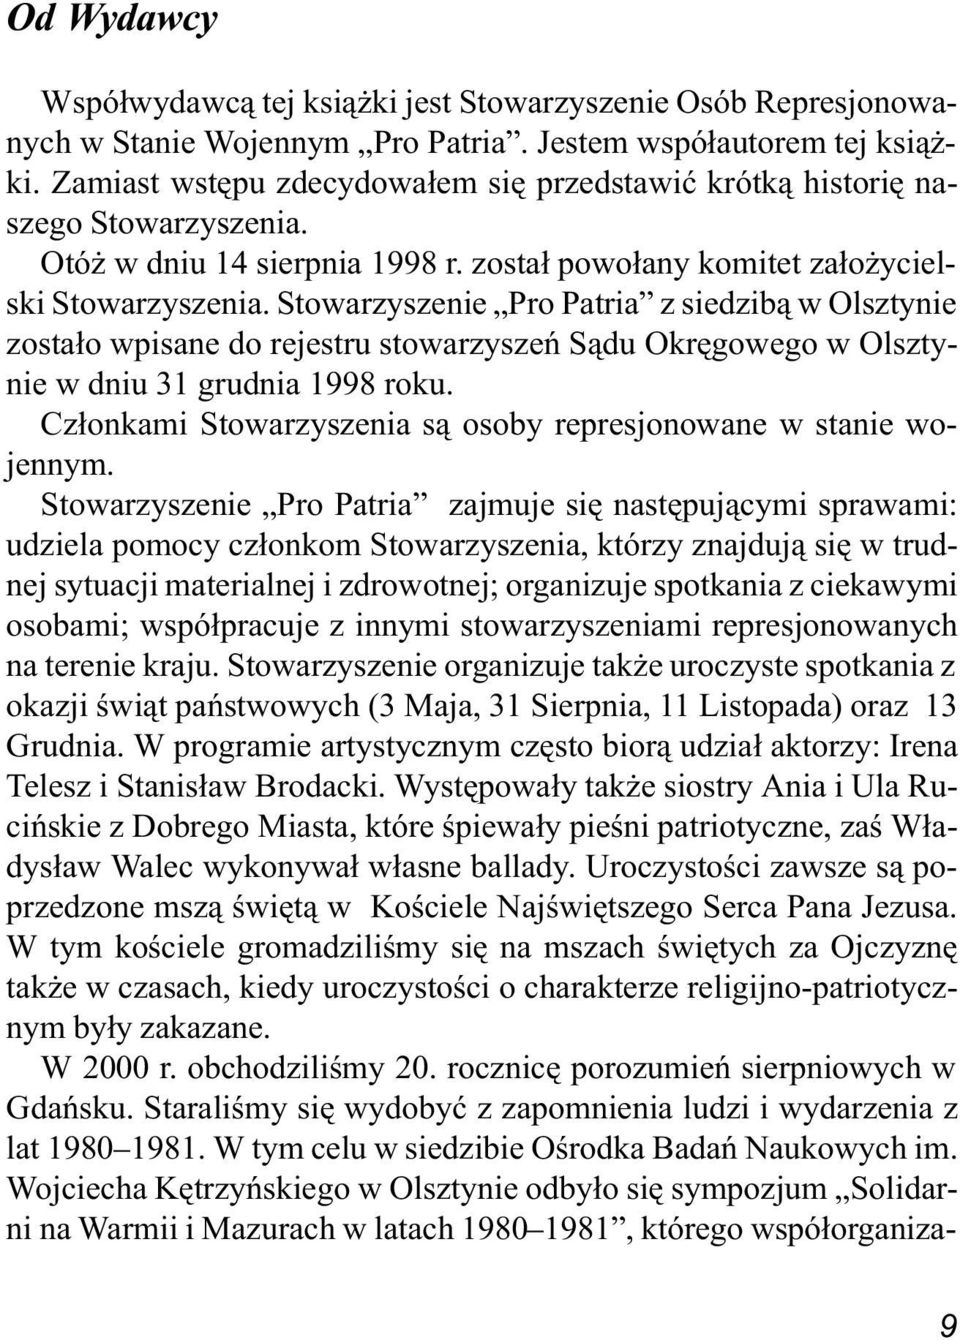 Stowarzyszenie Pro Patria z siedzib¹ w Olsztynie zosta³o wpisane do rejestru stowarzyszeñ S¹du Okrêgowego w Olsztynie w dniu 31 grudnia 1998 roku.